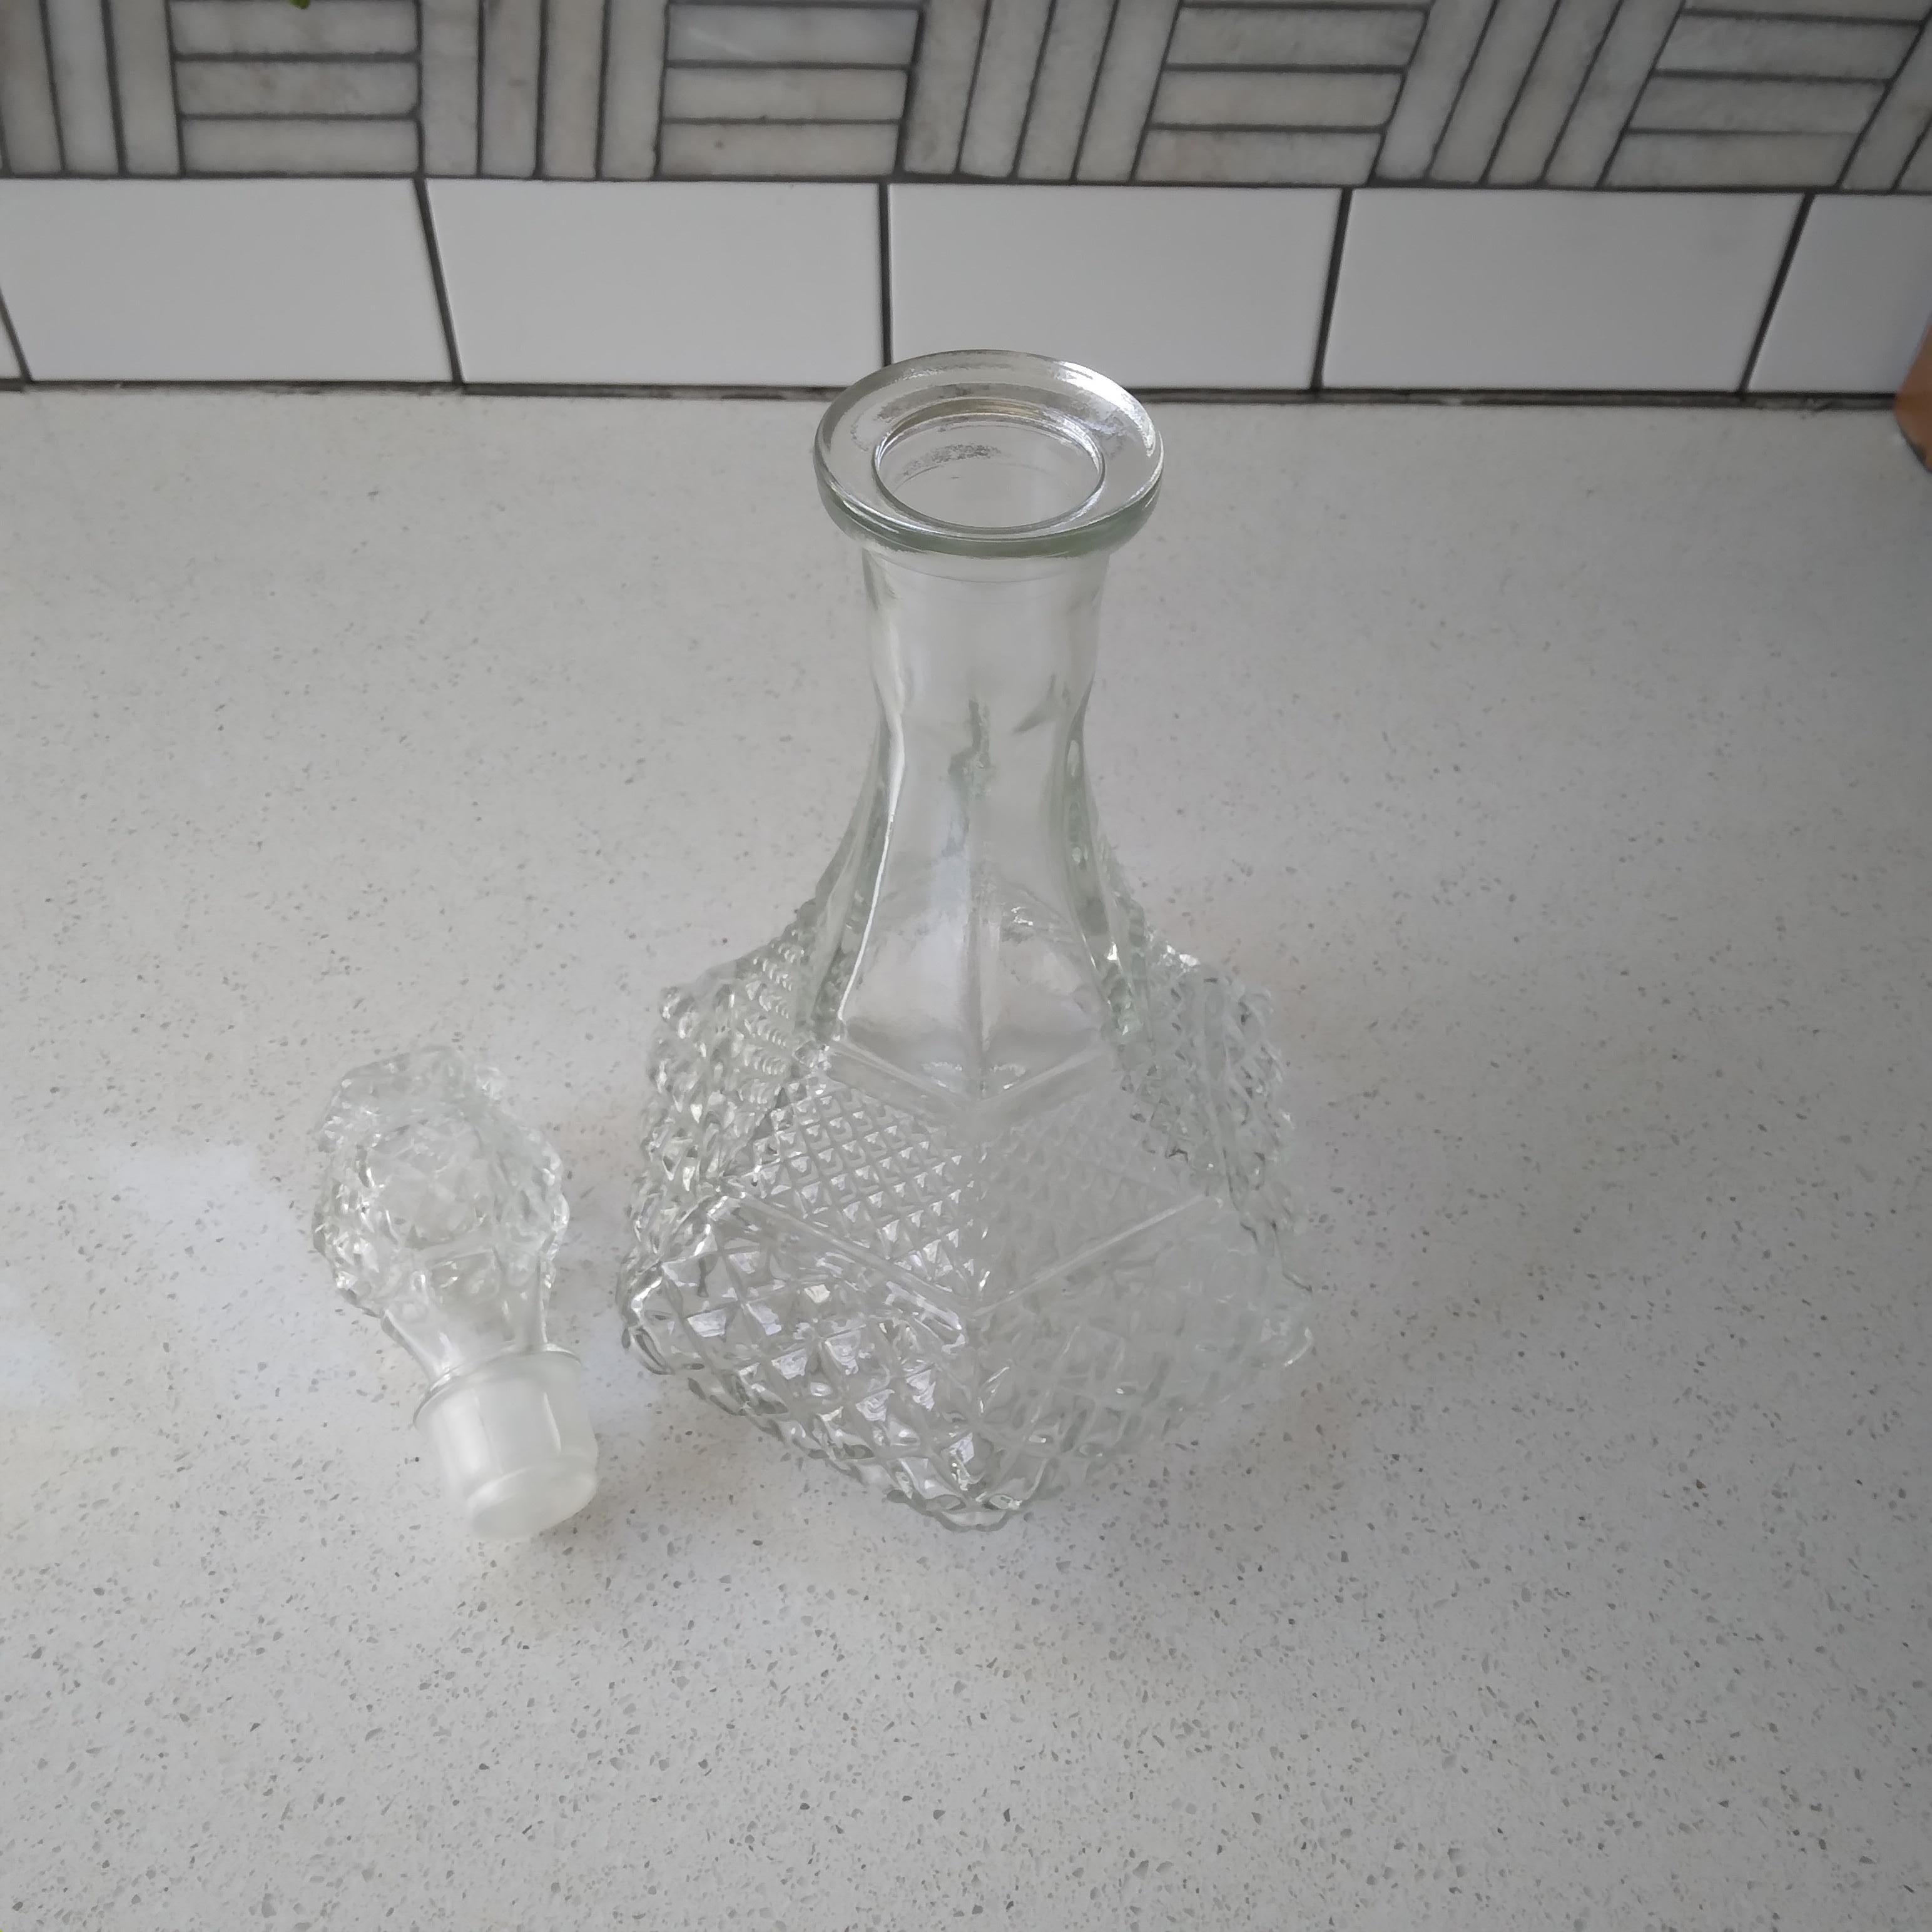 Dieser Weindekanter aus Kristallglas (Klarglas) ist wunderschön facettiert und zieht die Blicke auf sich. Wir lieben das Wexler-Rautenmuster, das zwei Größen von Rauten auf der großzügigen, quadratischen Basis aufweist. Der Deckel endet in einem